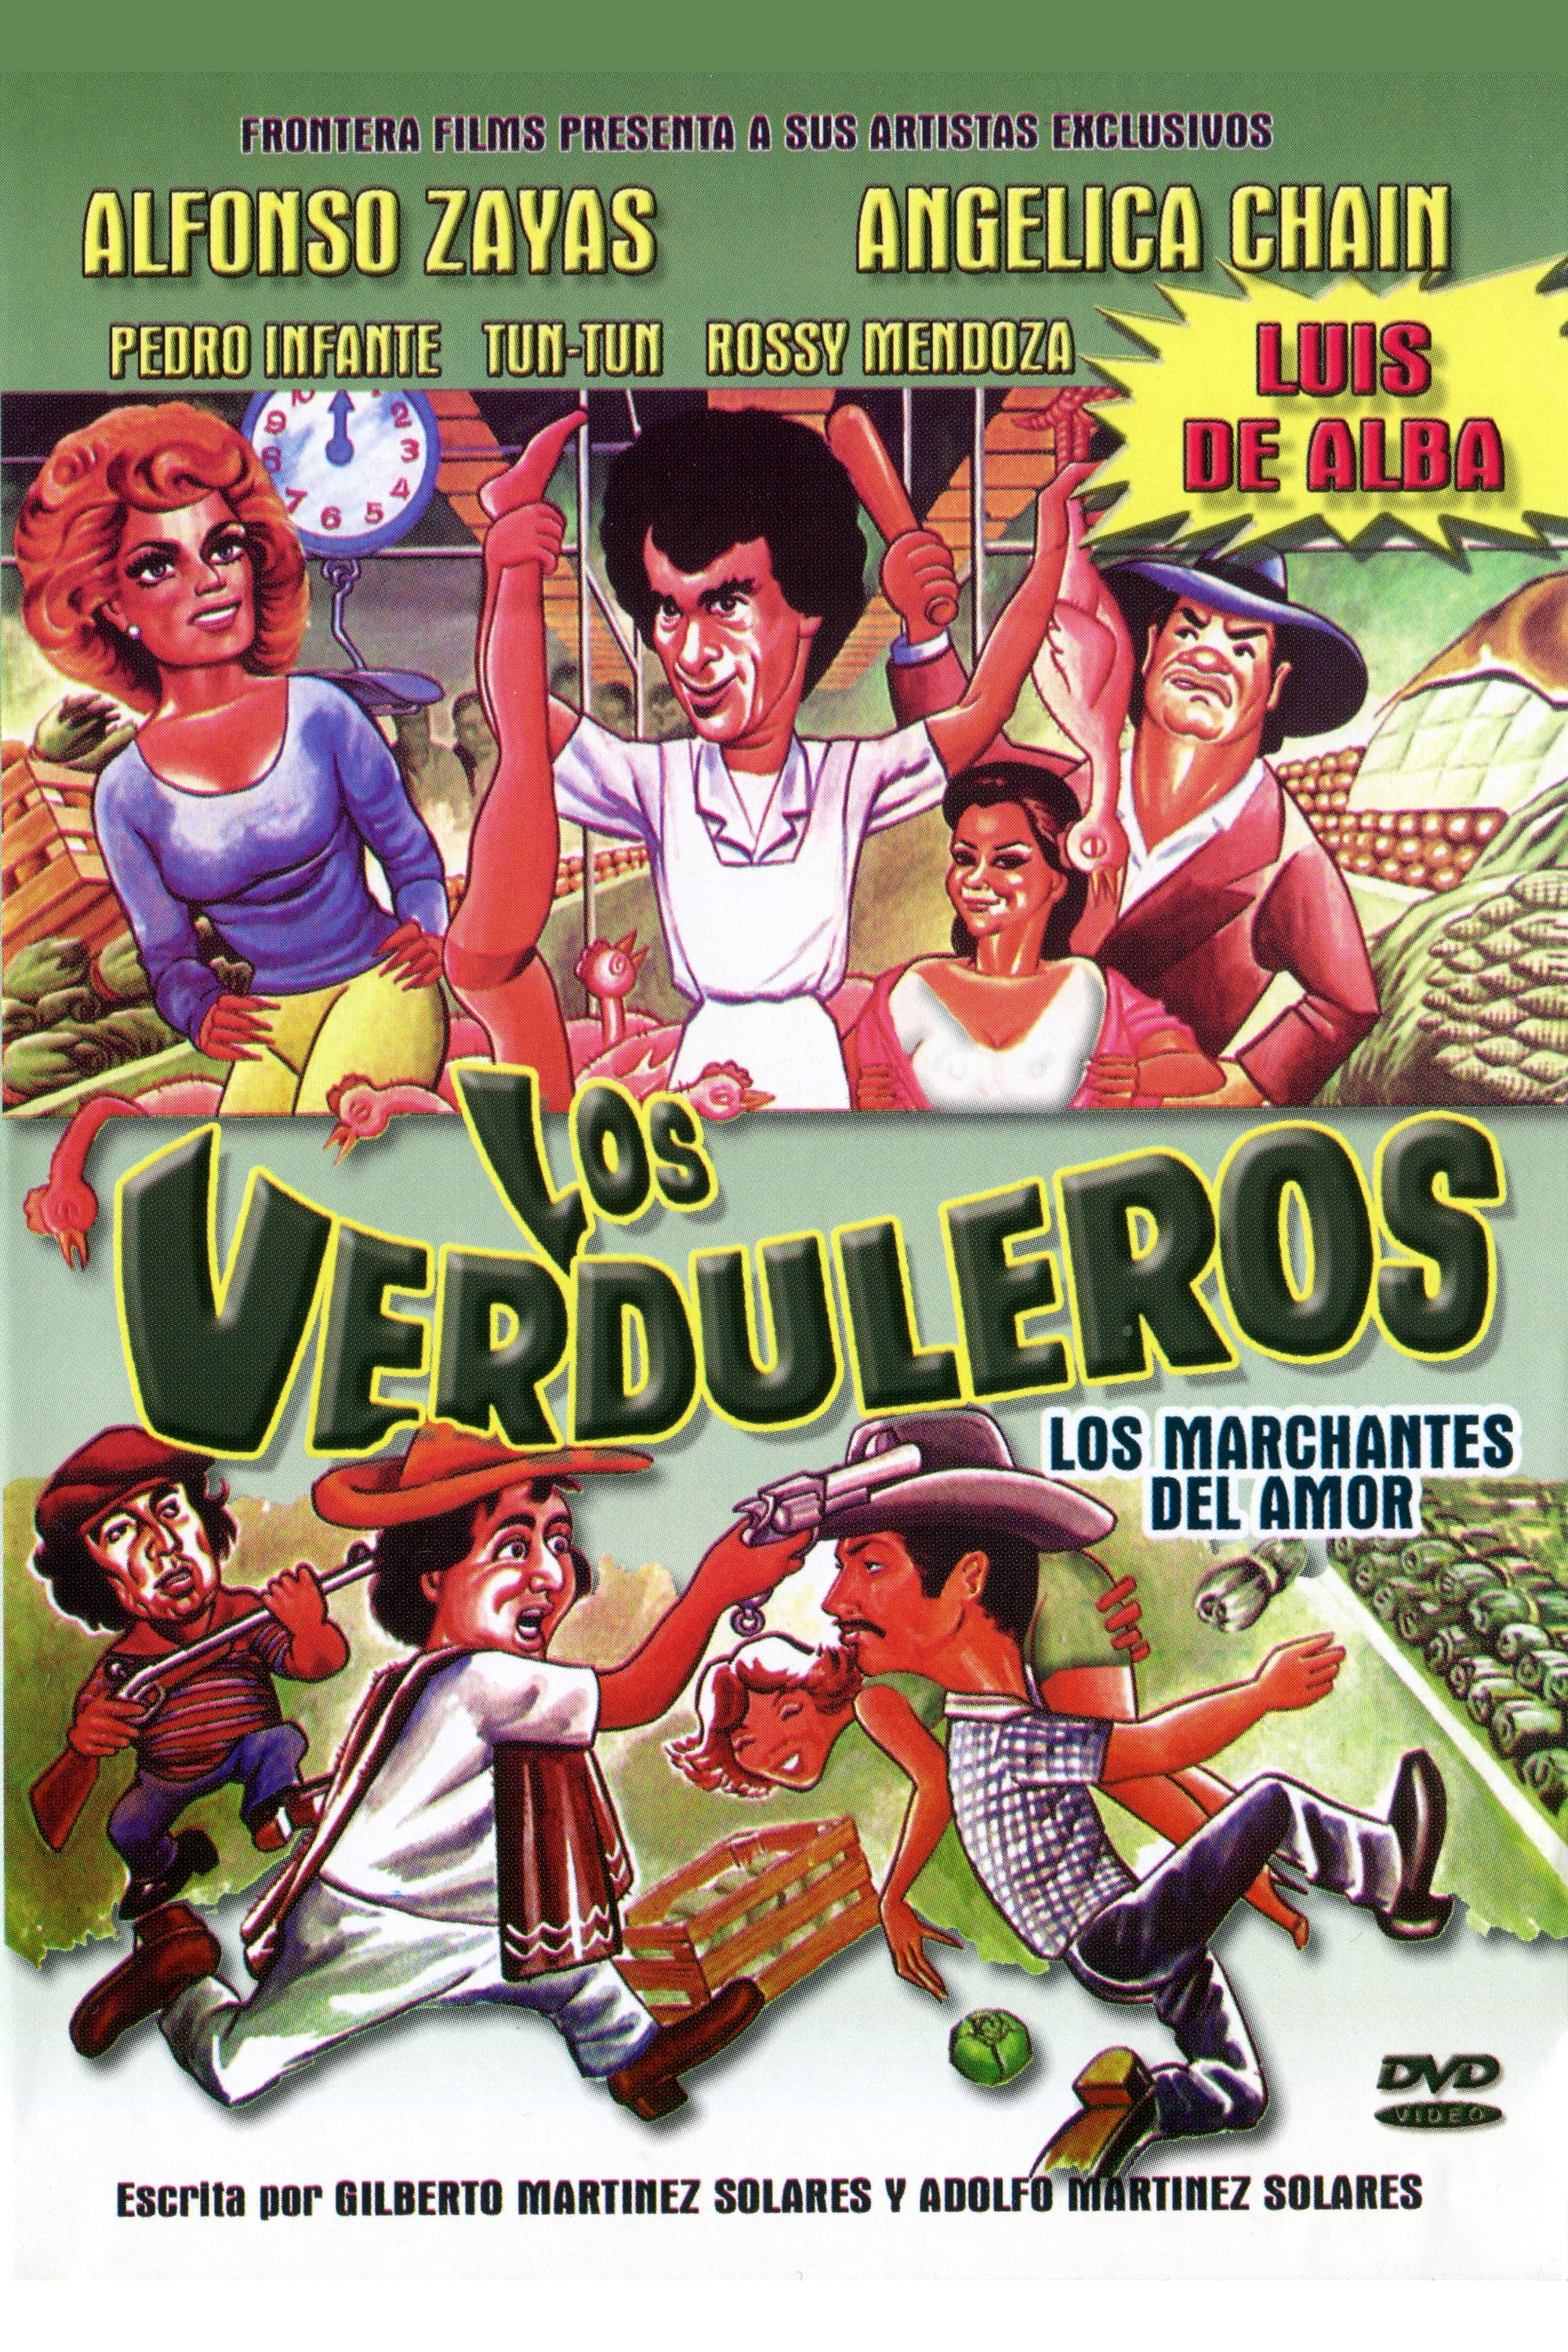 Los verduleros 1 pelicula completa en español latino online